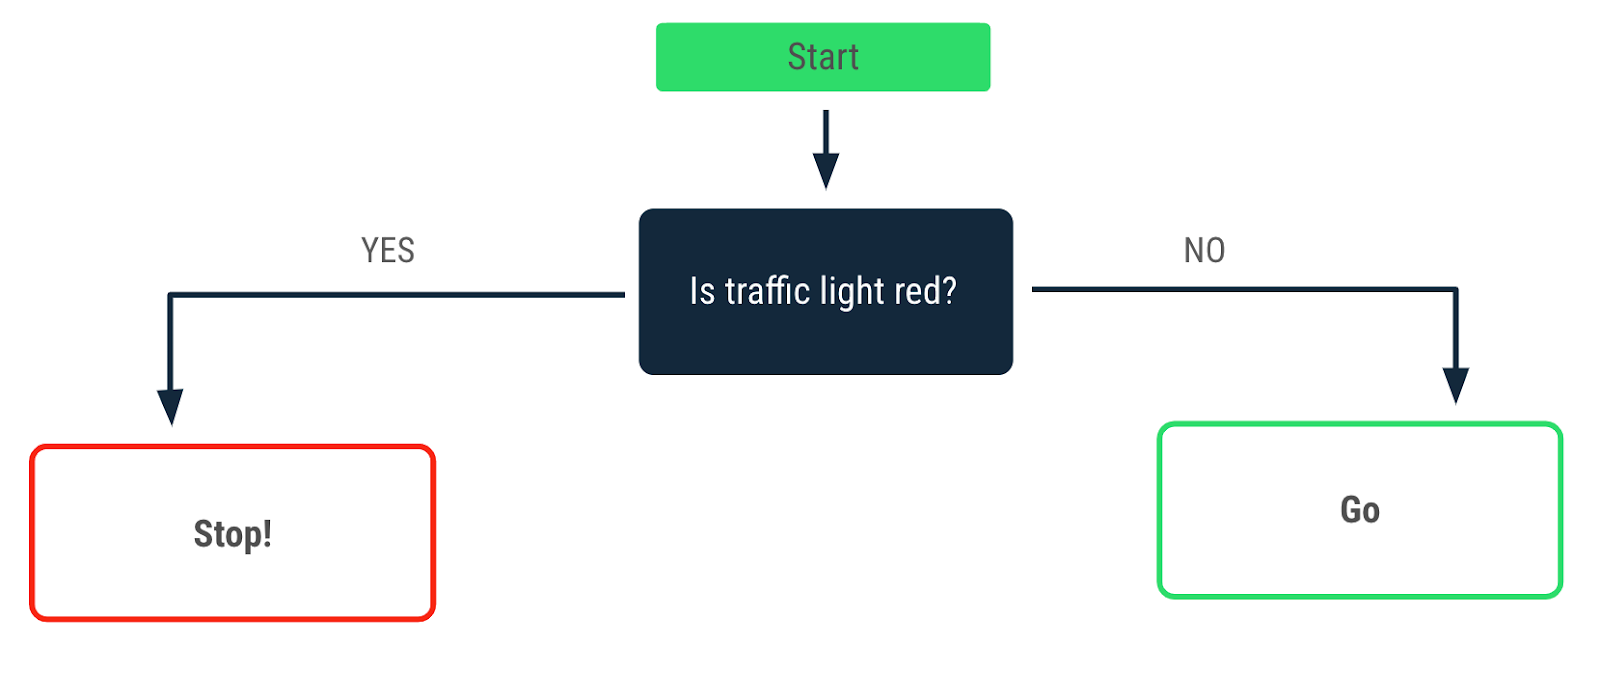 一个流程图，描述了红绿灯亮红灯时做出的决策。“yes”箭头指向“Stop!”消息。“no”箭头指向“Go”消息。